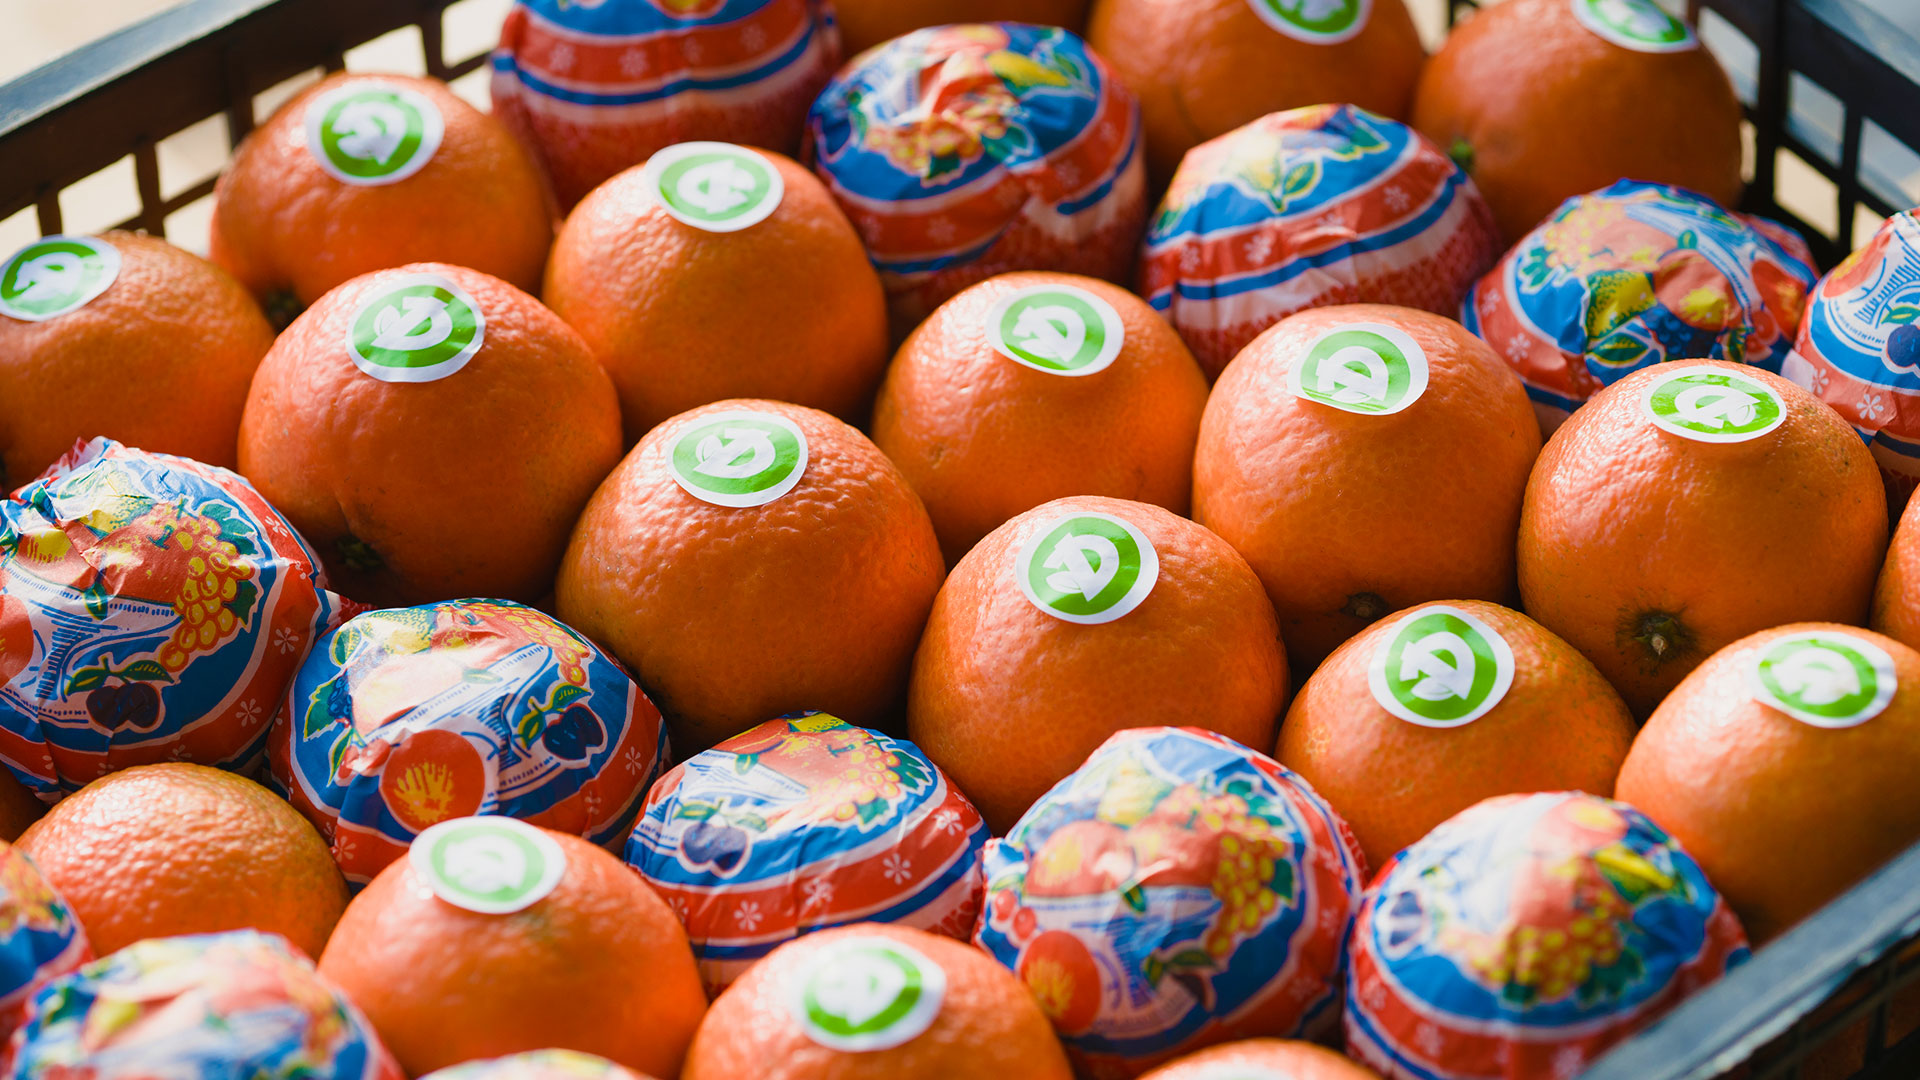 Mandarini forniti all'ingrosso per ristoranti, GDO e Horeca | Due Erre